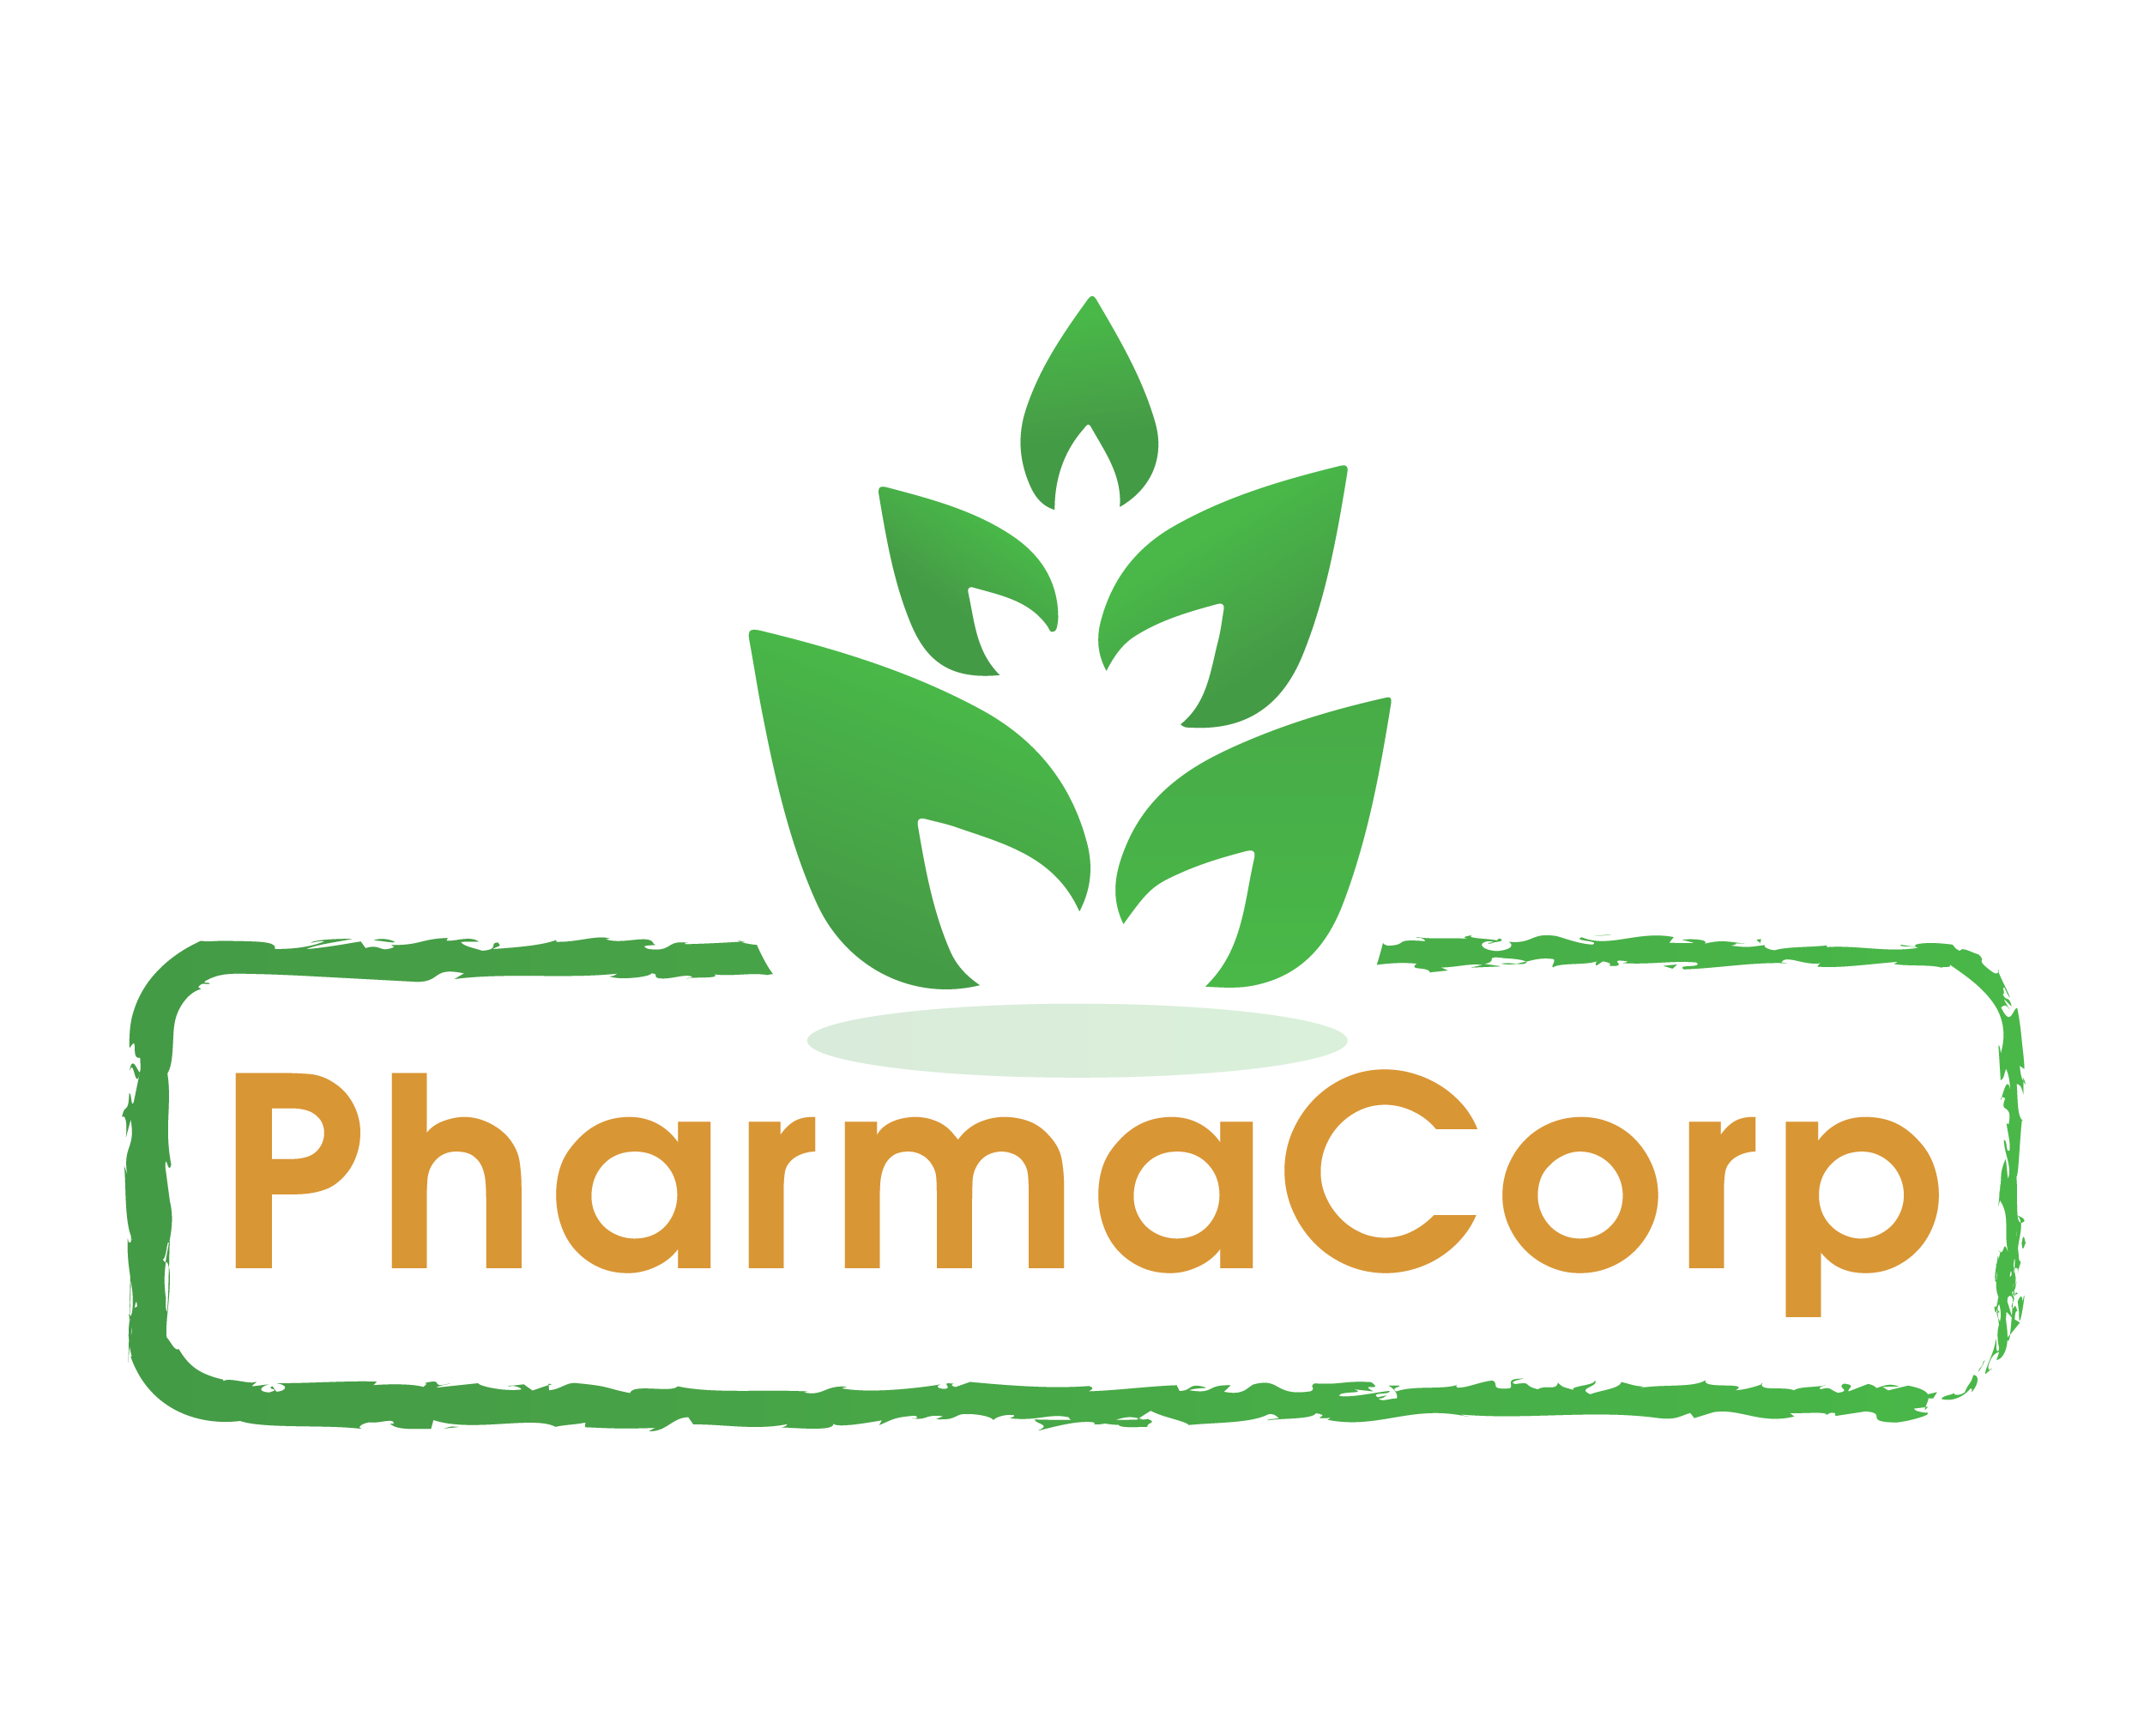 PharmaCorp